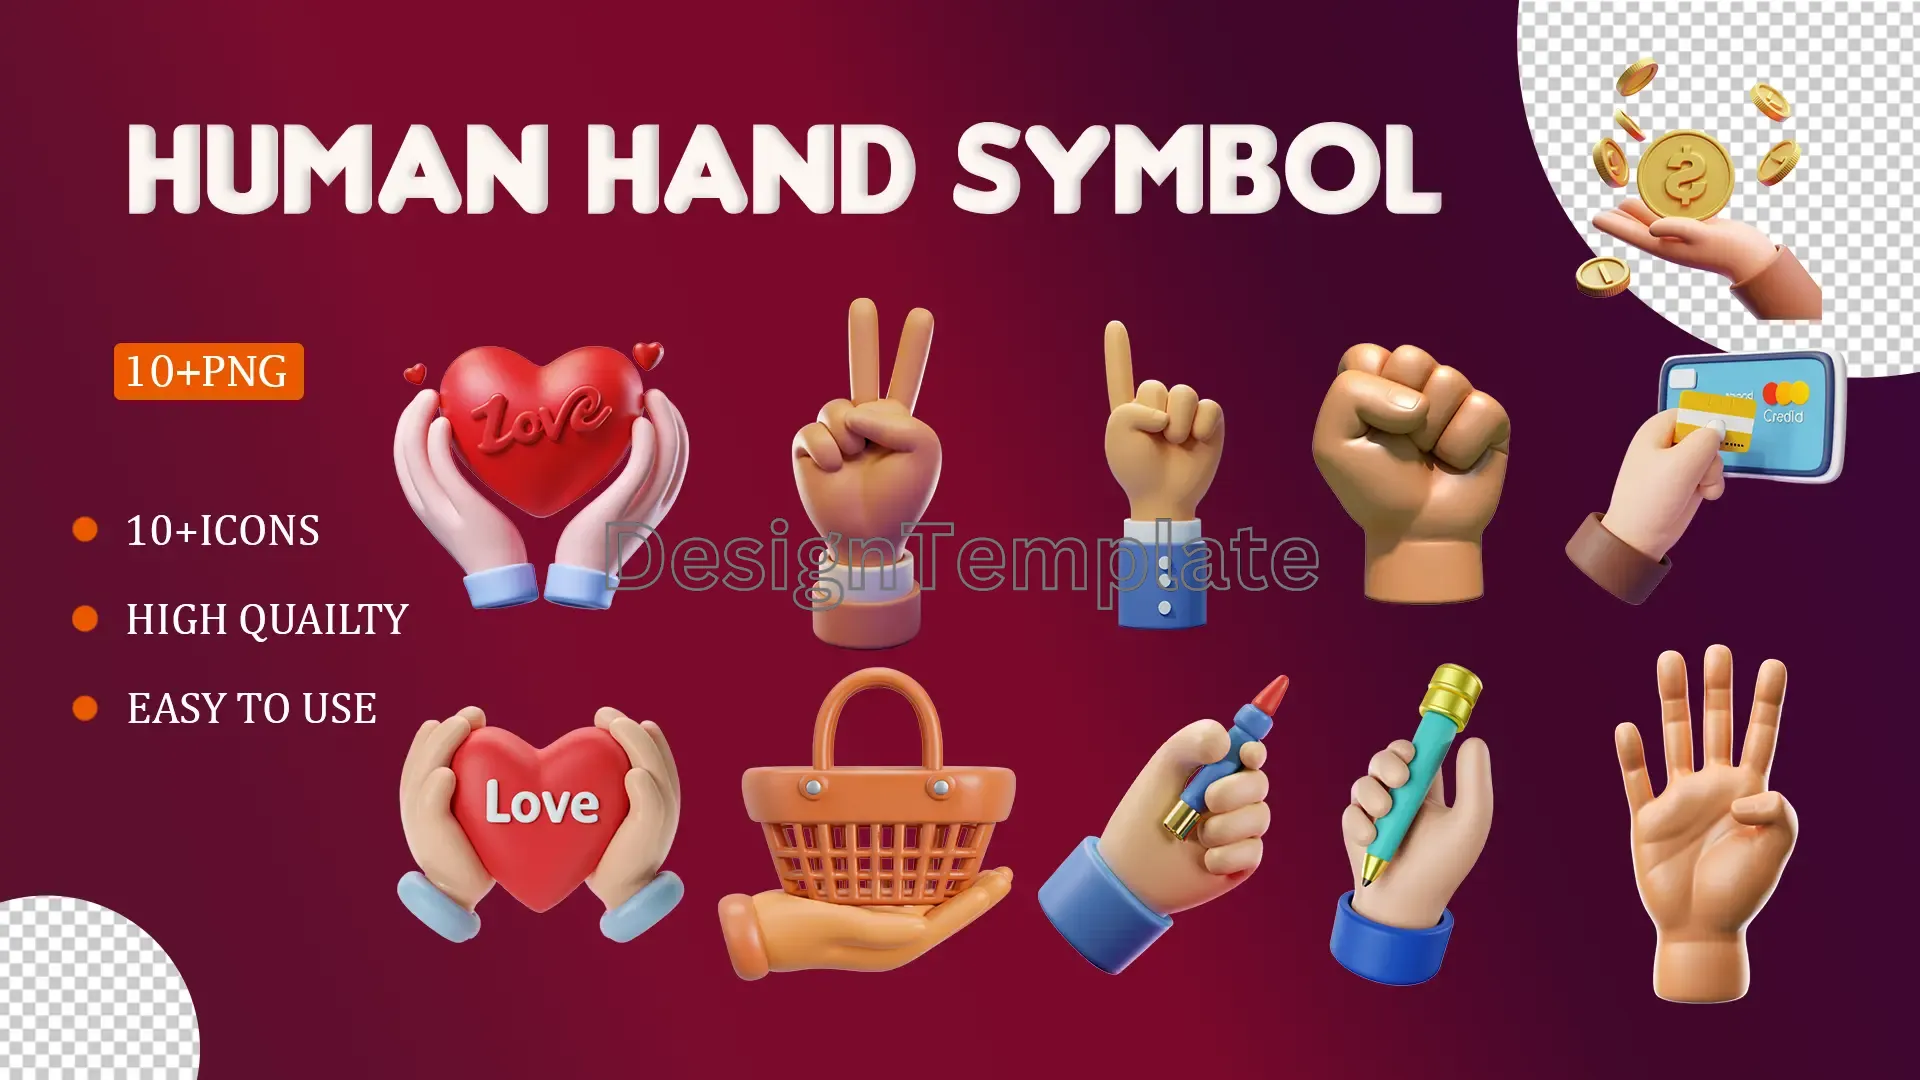 Human Hand Symbol 3D Elements Pack